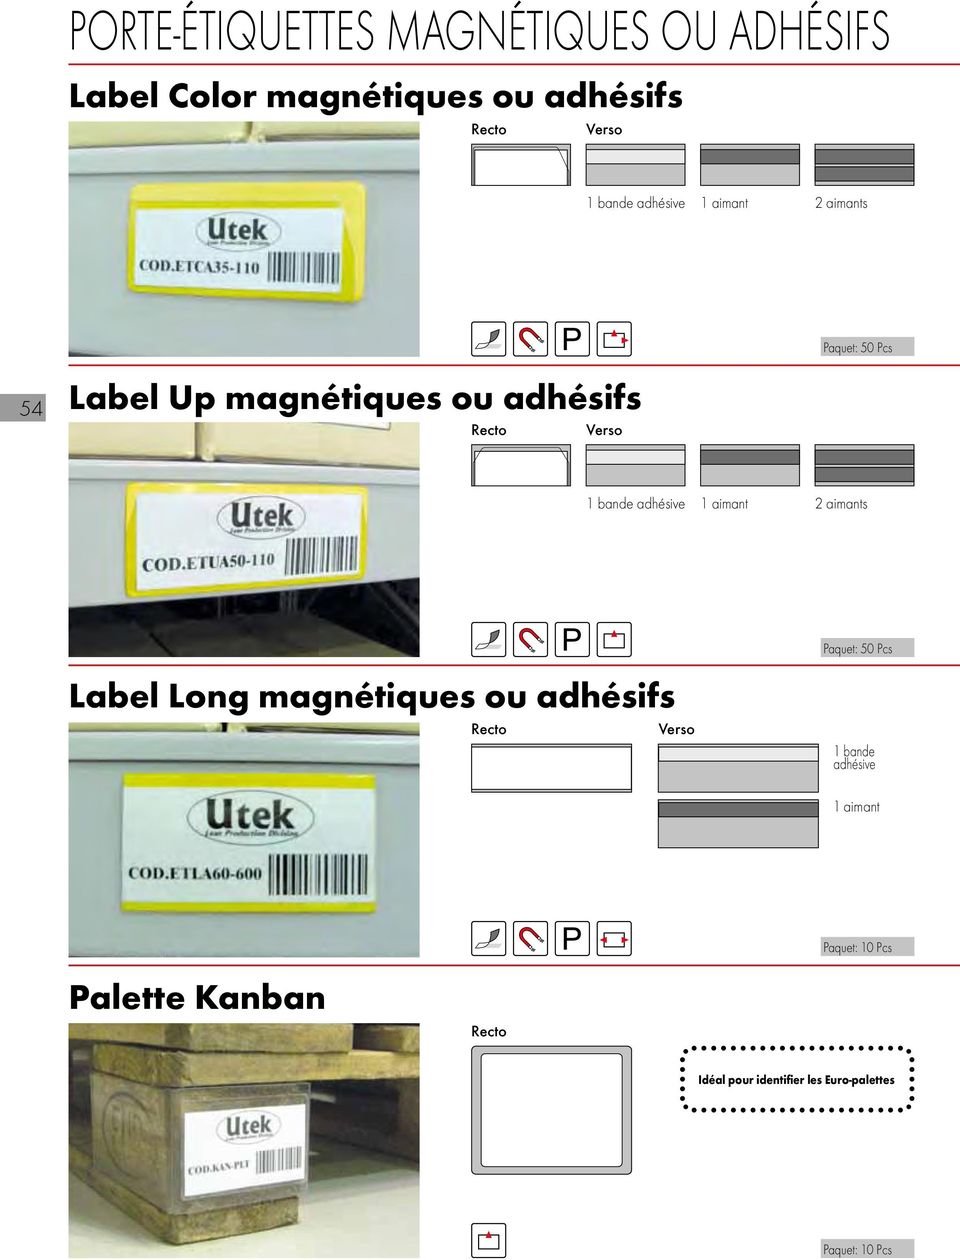 adhésive 1 aimant 2 aimants Label Long magnétiques ou adhésifs Verso Paquet: Pcs 1 bande